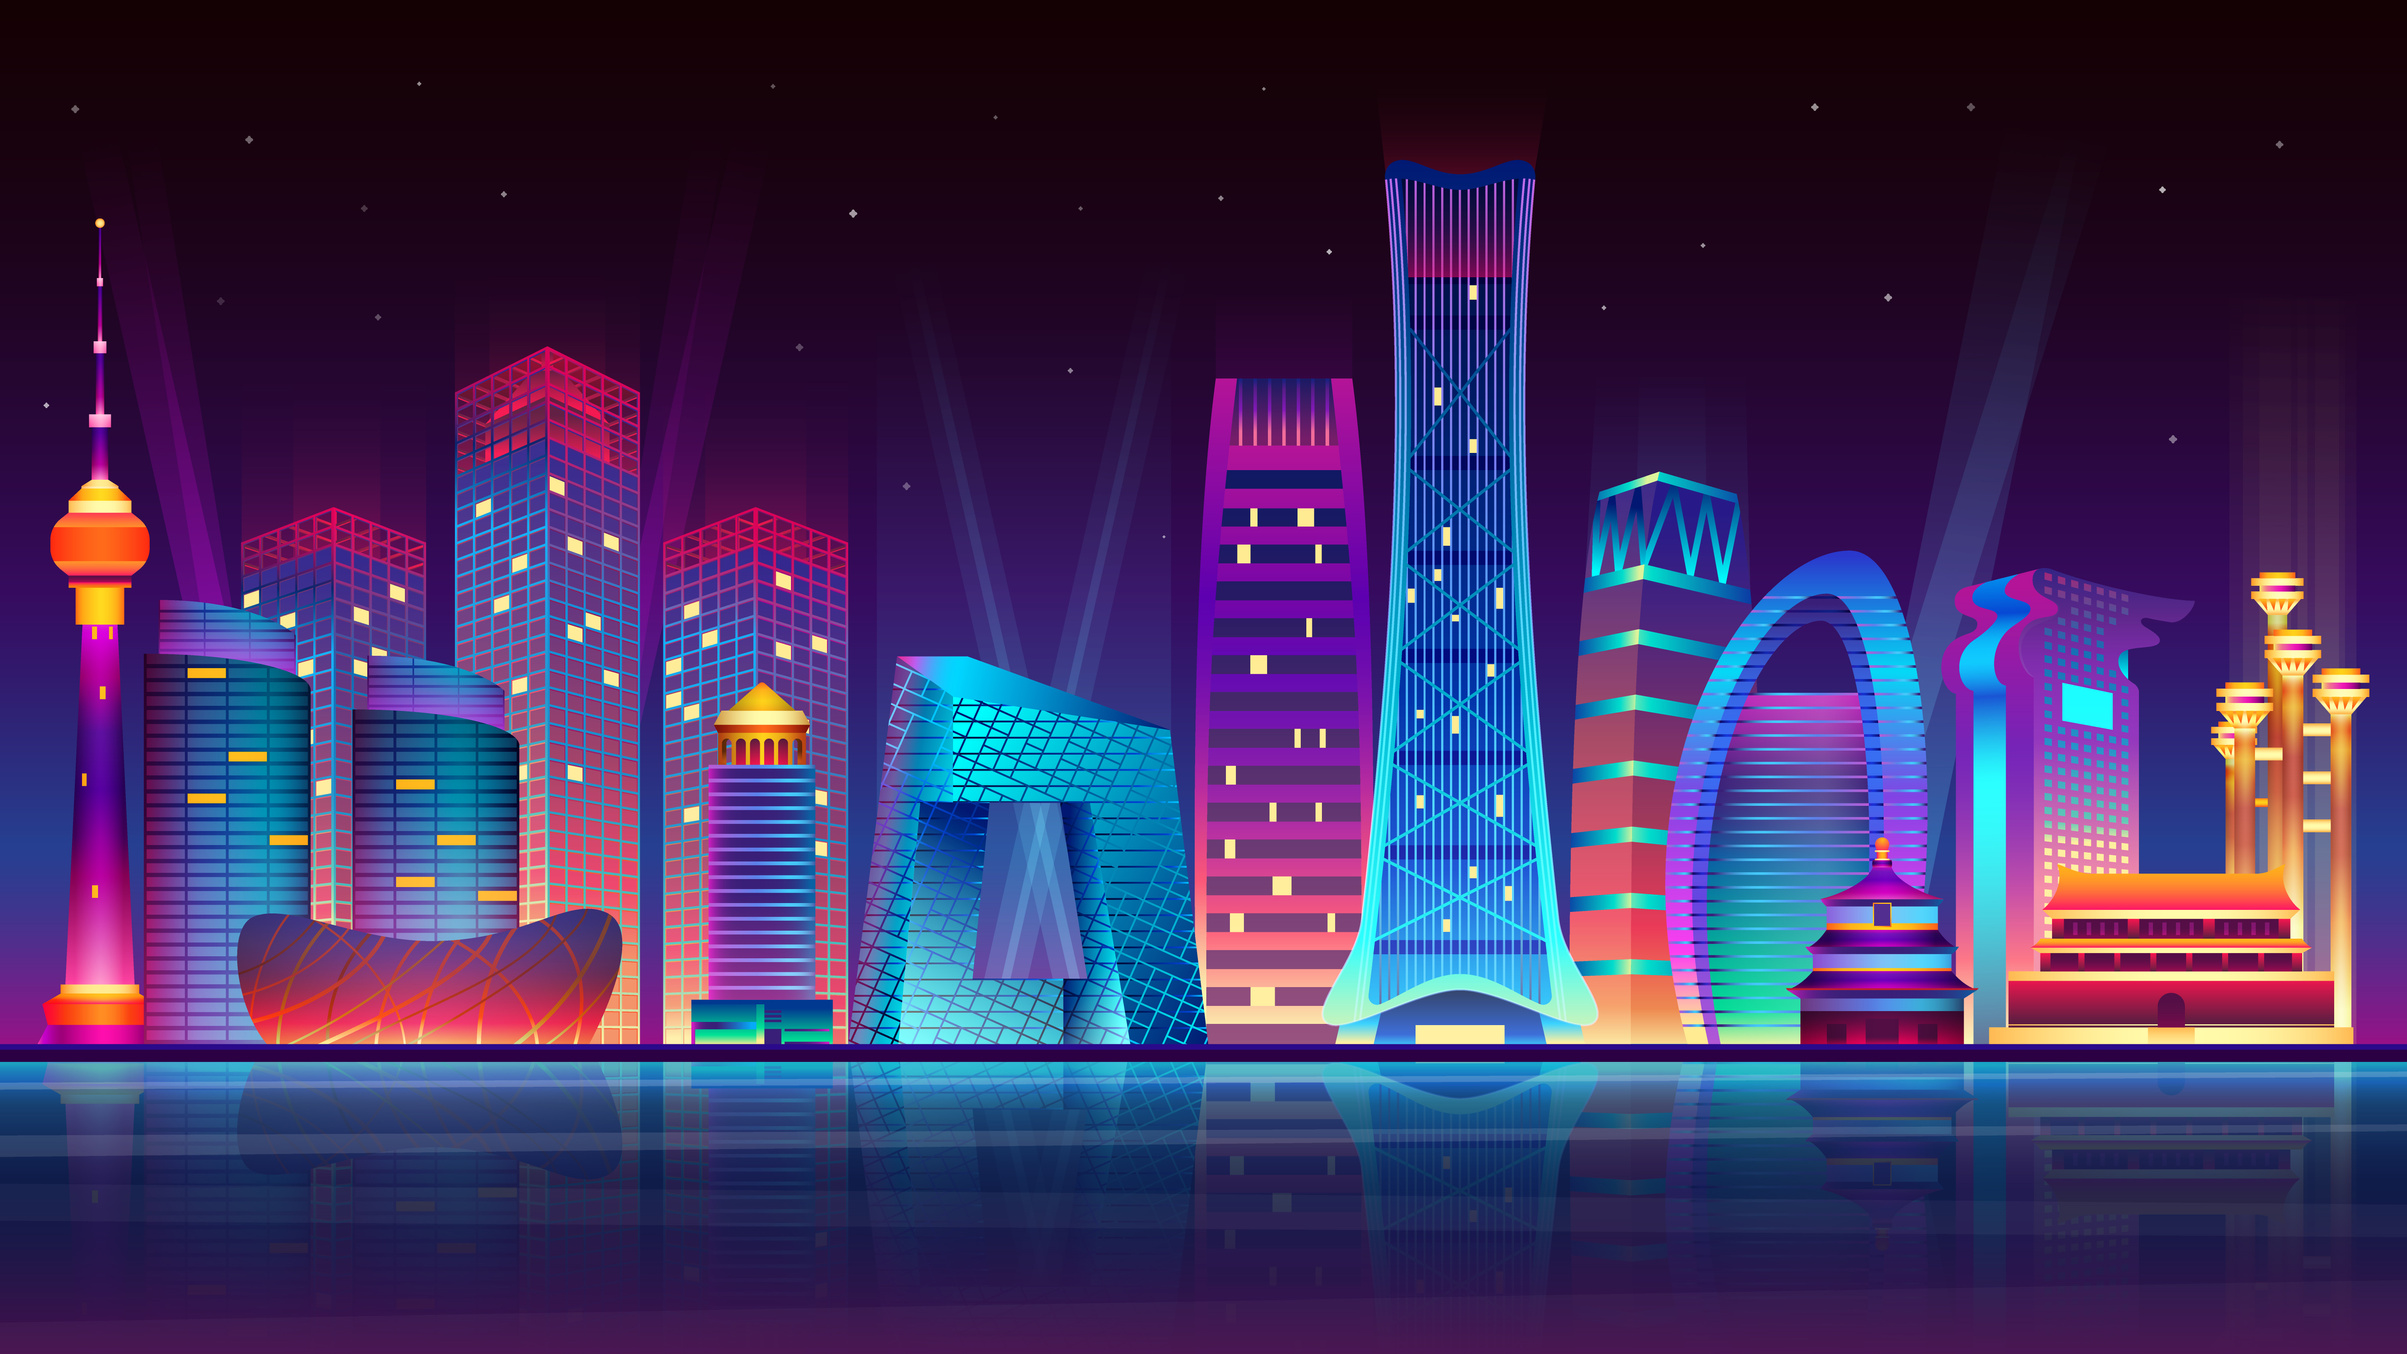 Night Beijing City illuminated by neon lights.  illustration